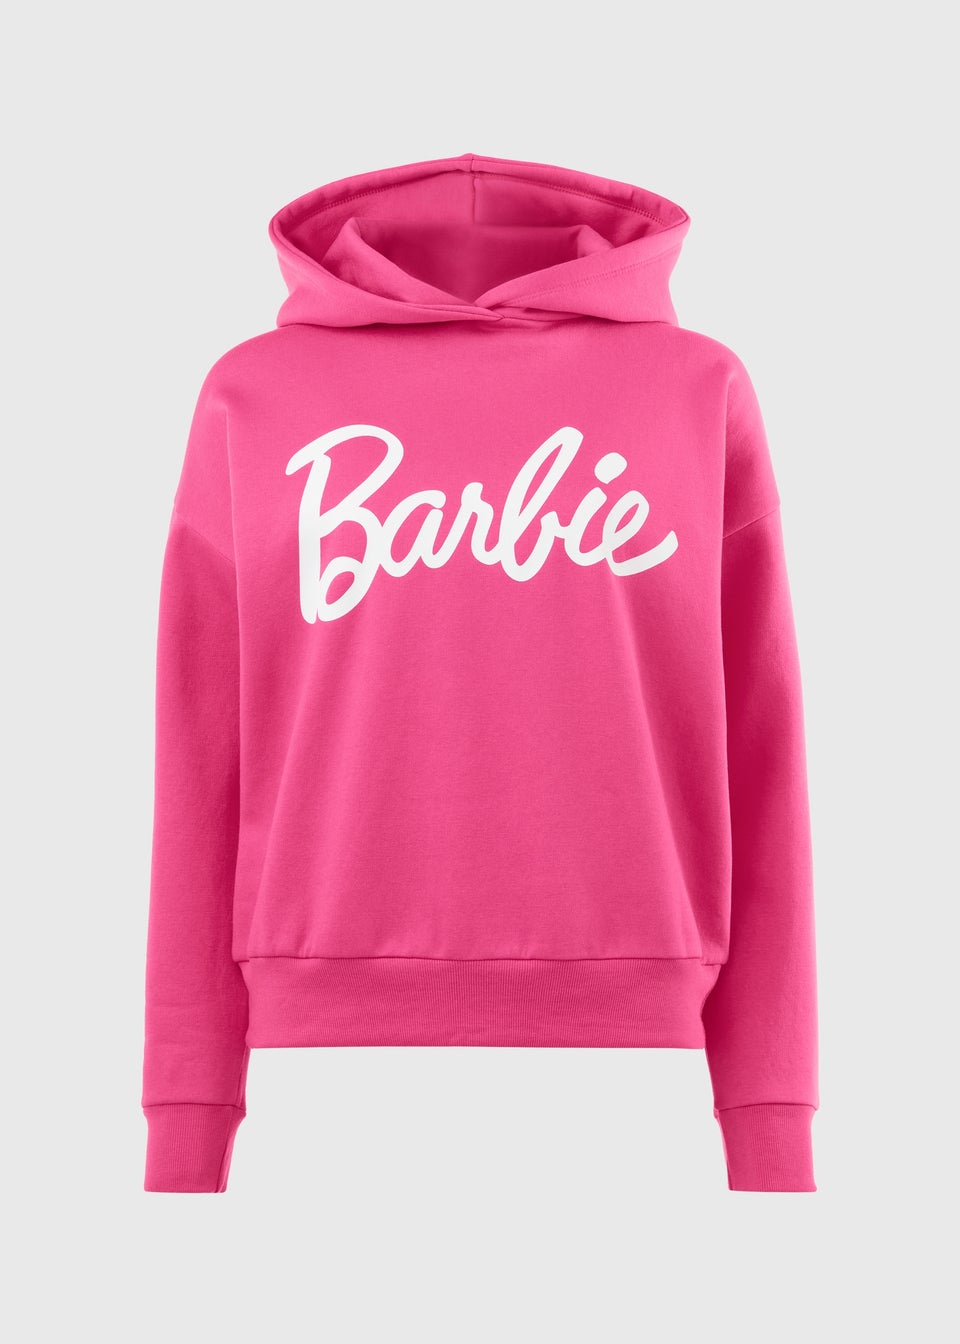 Barbie Pink Hoodie - Matalan